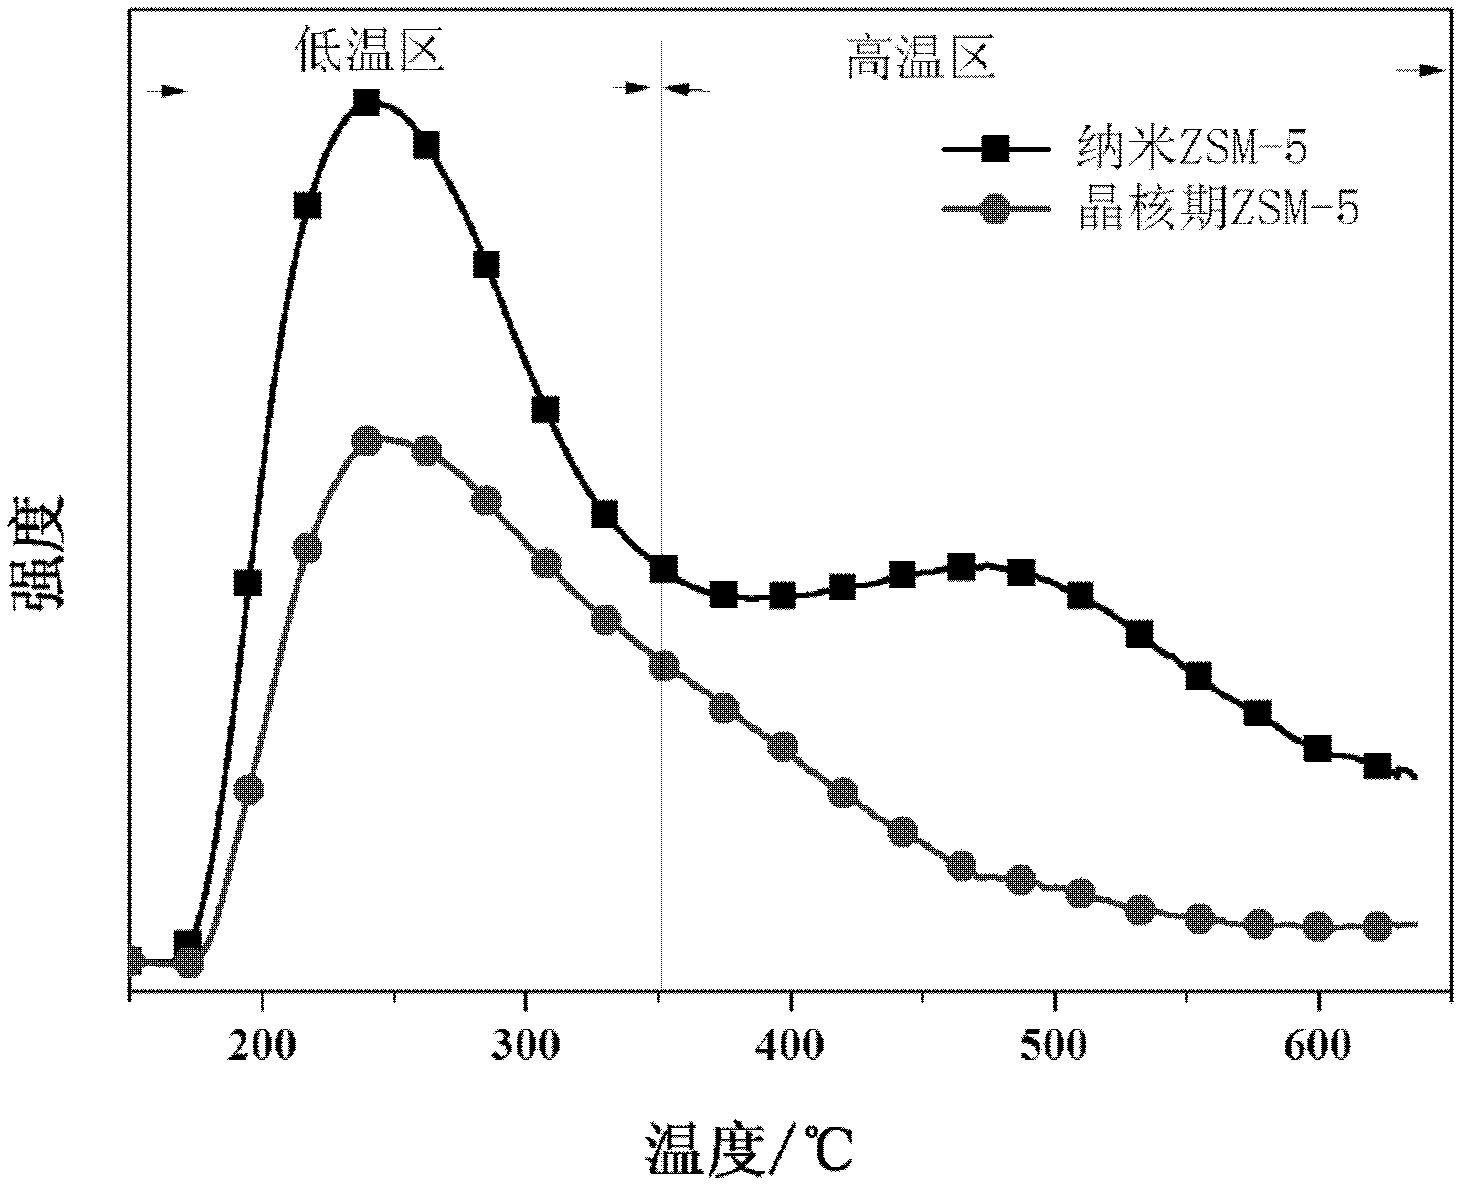 Method for preparing propene by catalytic cracking